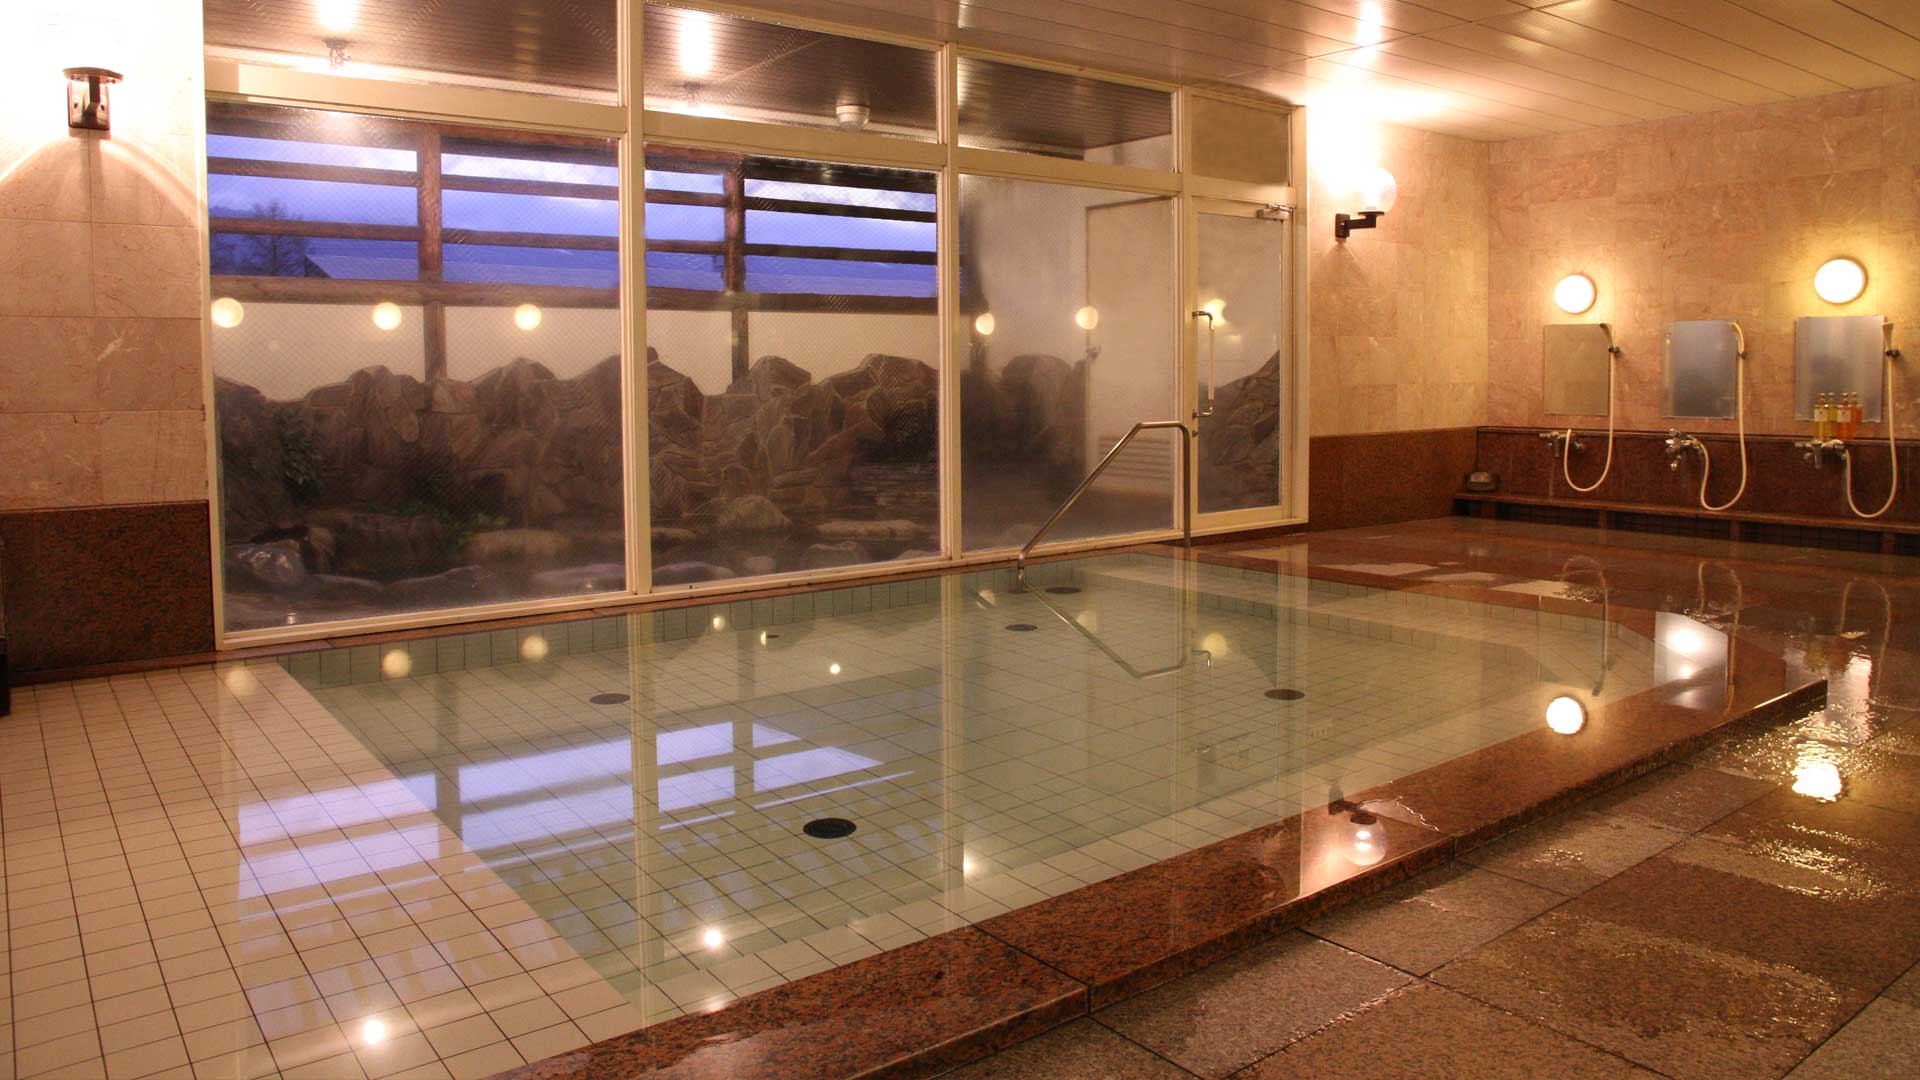 Large public baths